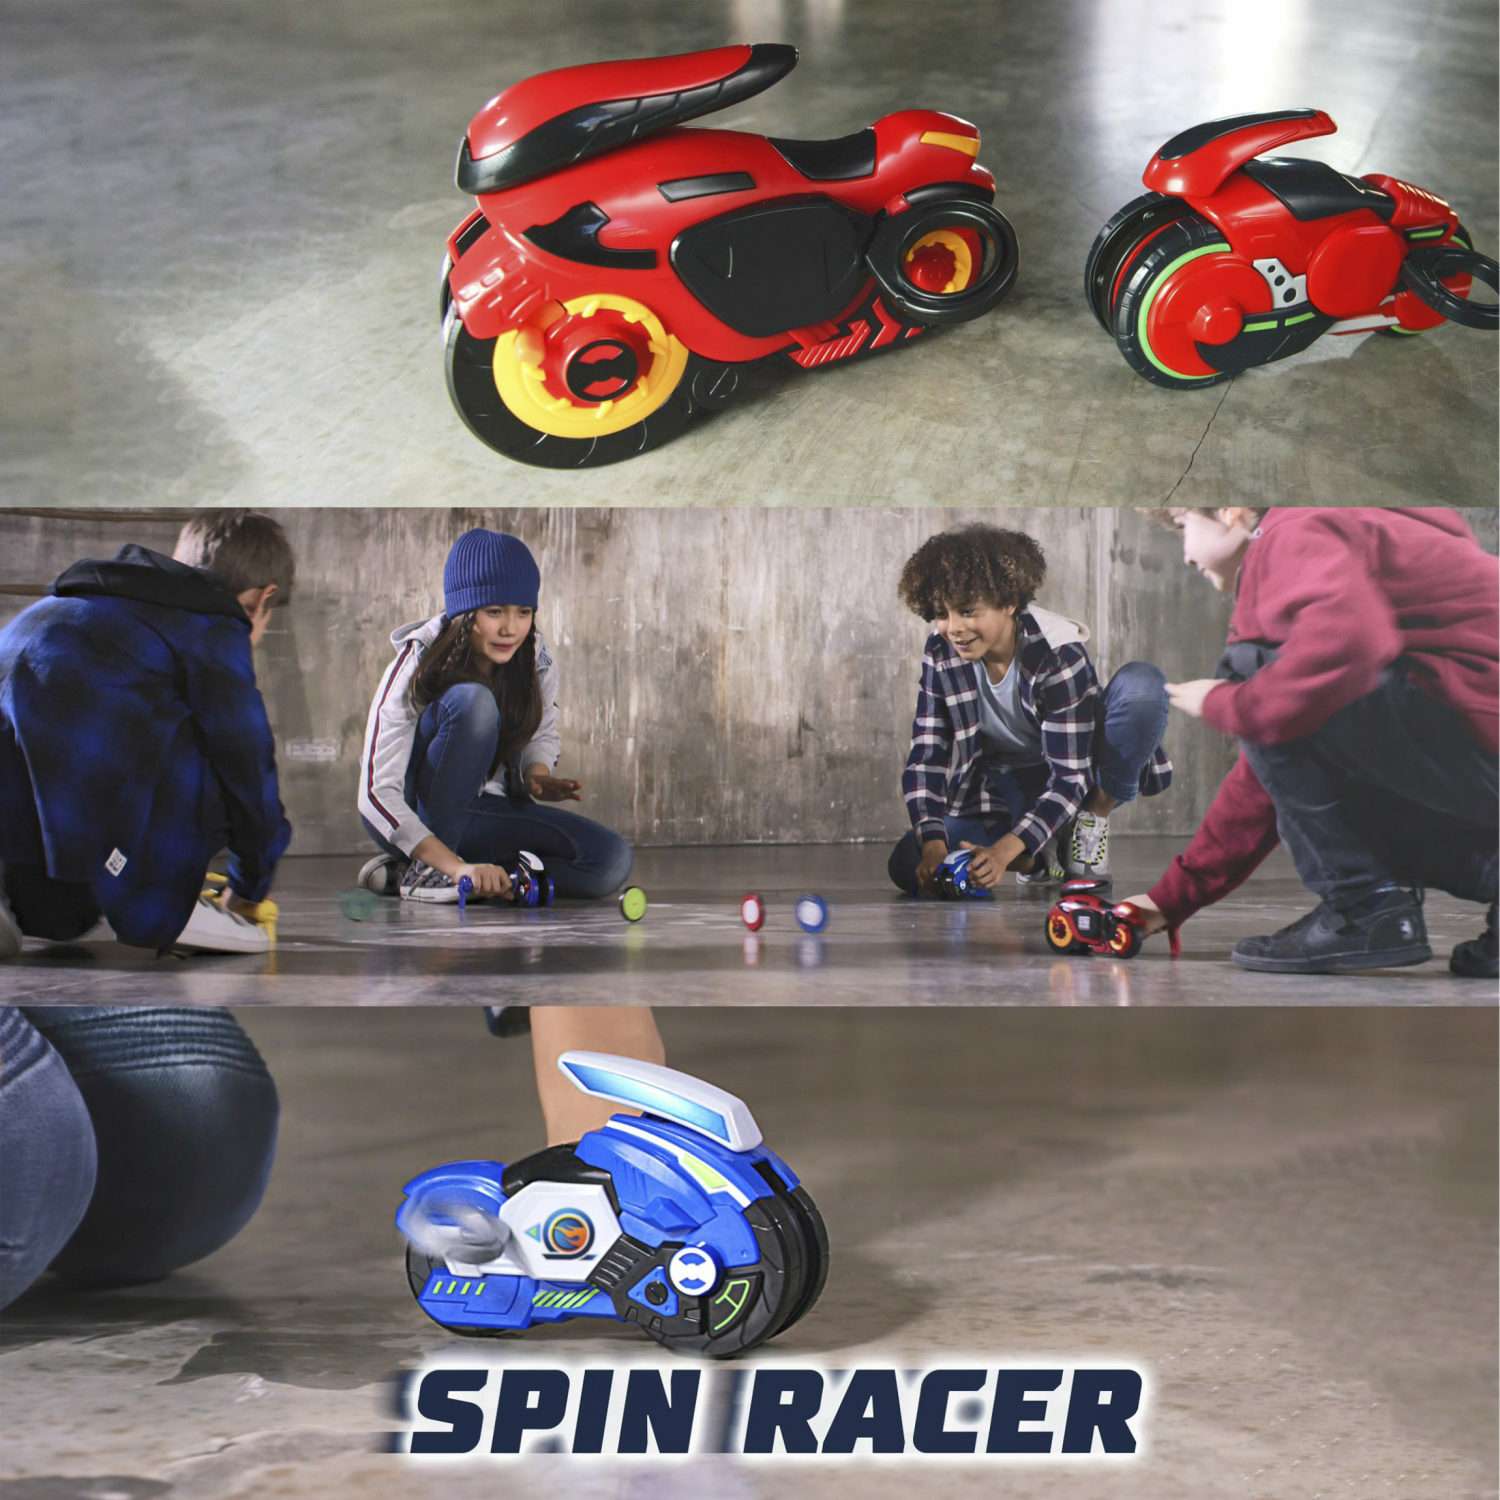 Игровой набор Hot Wheels Spin Racer Синяя Молния игрушечный мотоцикл с колесом-гироскопом Т19373 - фото 10